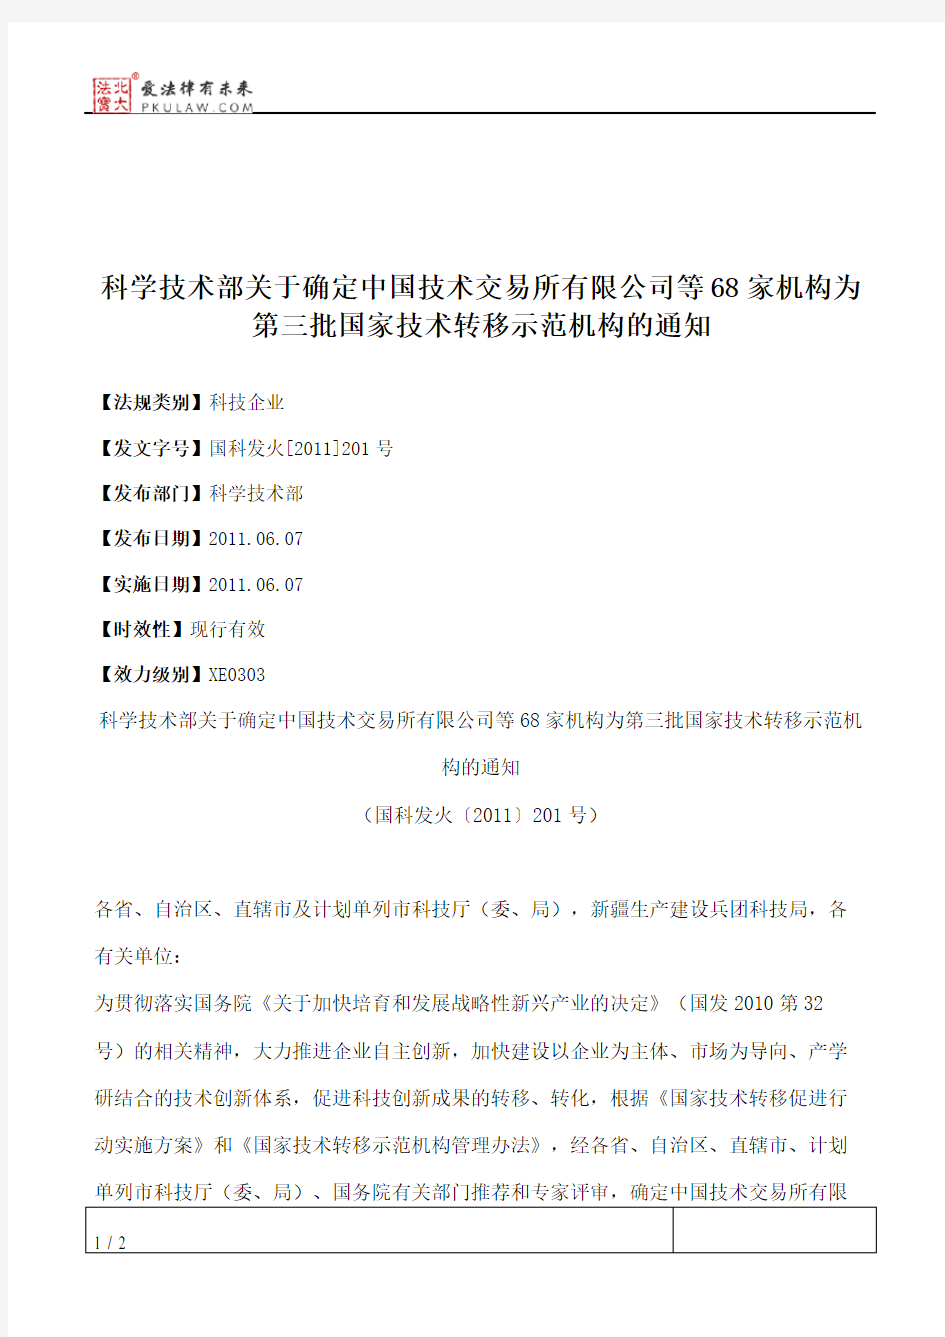 科学技术部关于确定中国技术交易所有限公司等68家机构为第三批国